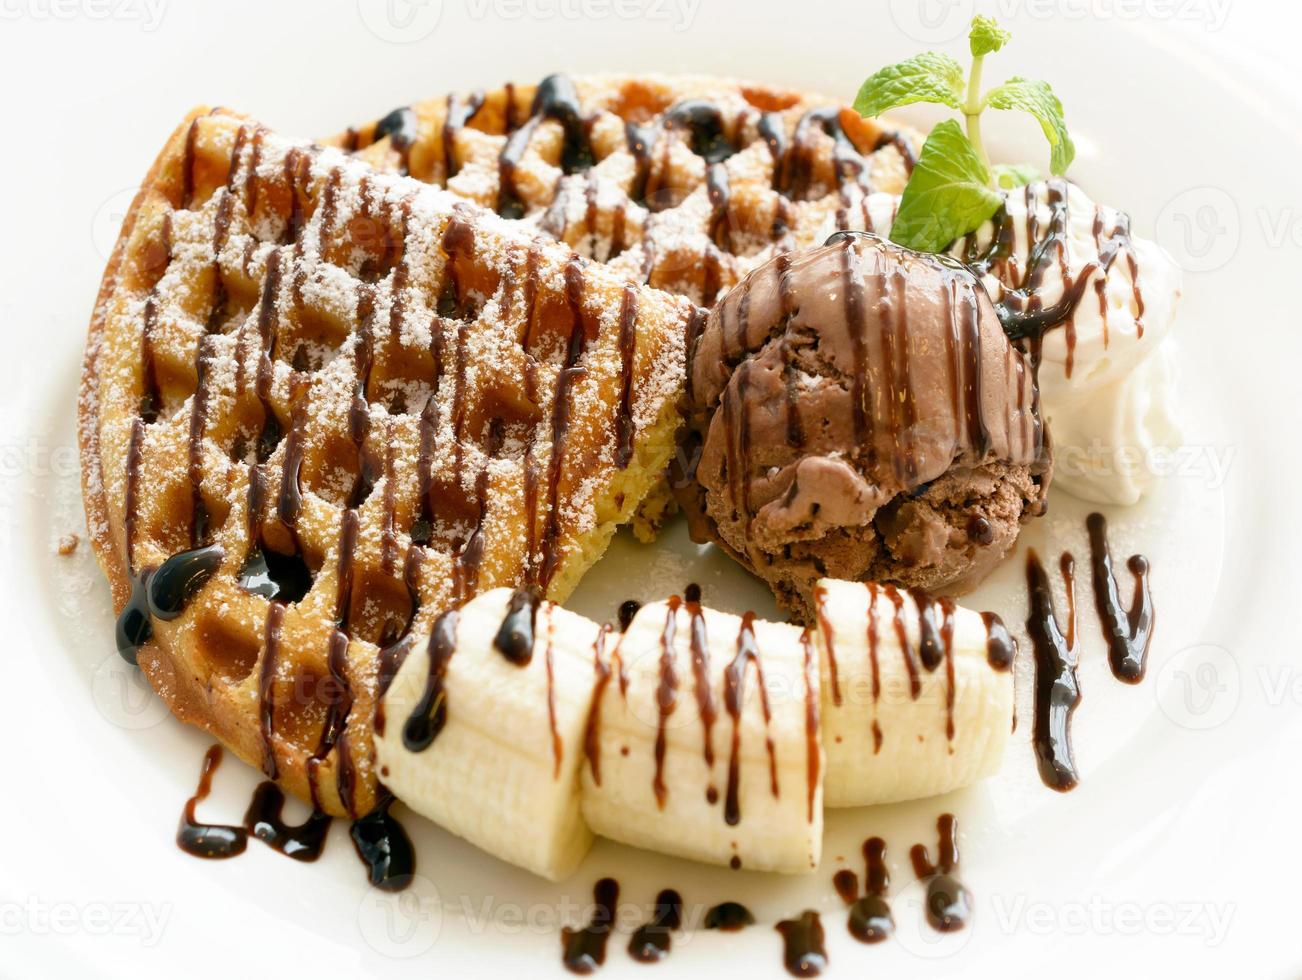 Chocolate banana waffle photo